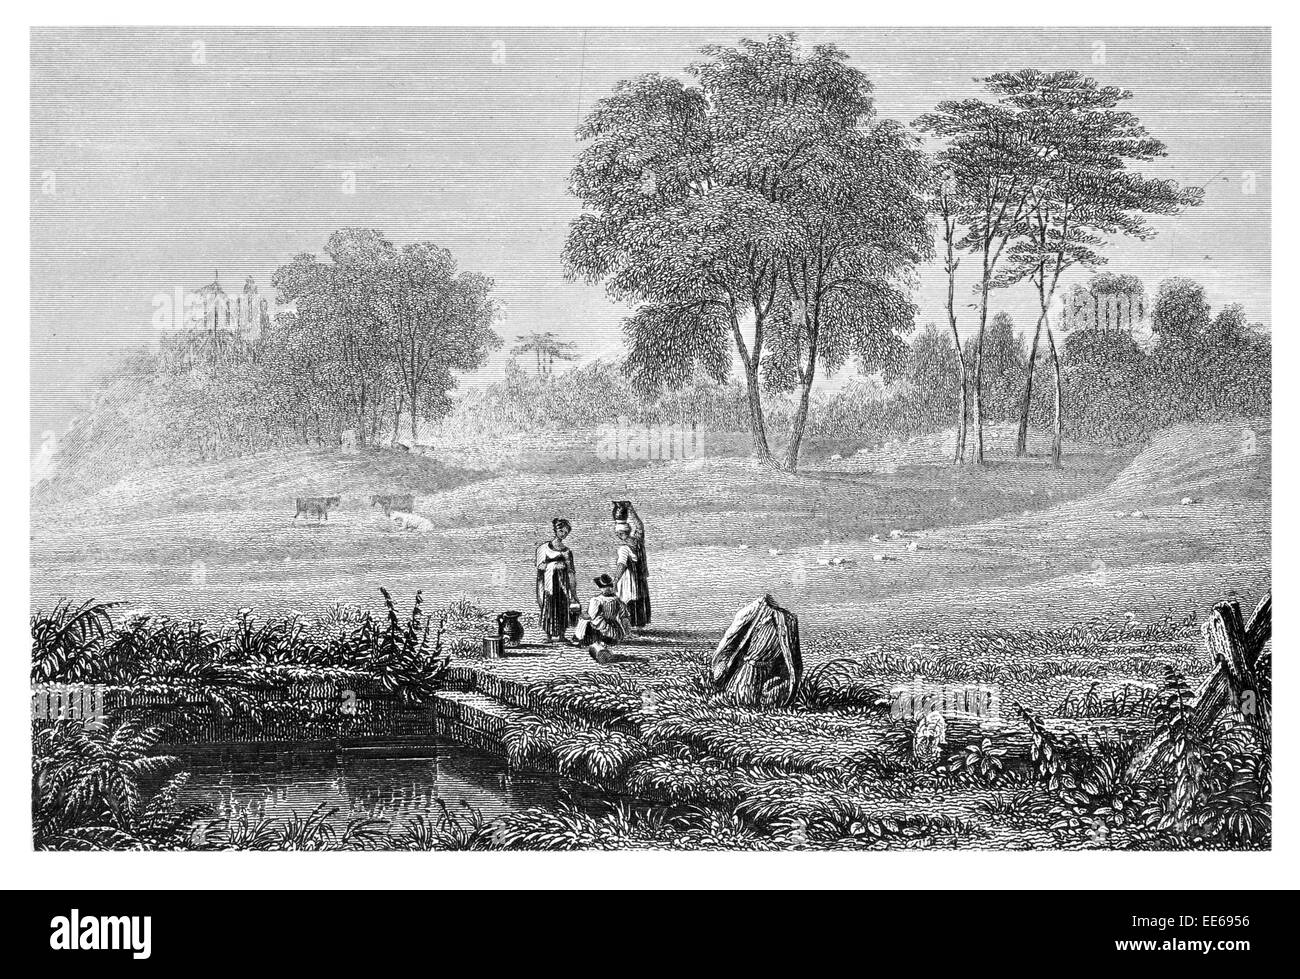 Peg O'Nelly ben Clitheroe Watering Hole acqua fresca di sorgente Lancashire North West England 1879 Inglese Isole britanniche Foto Stock